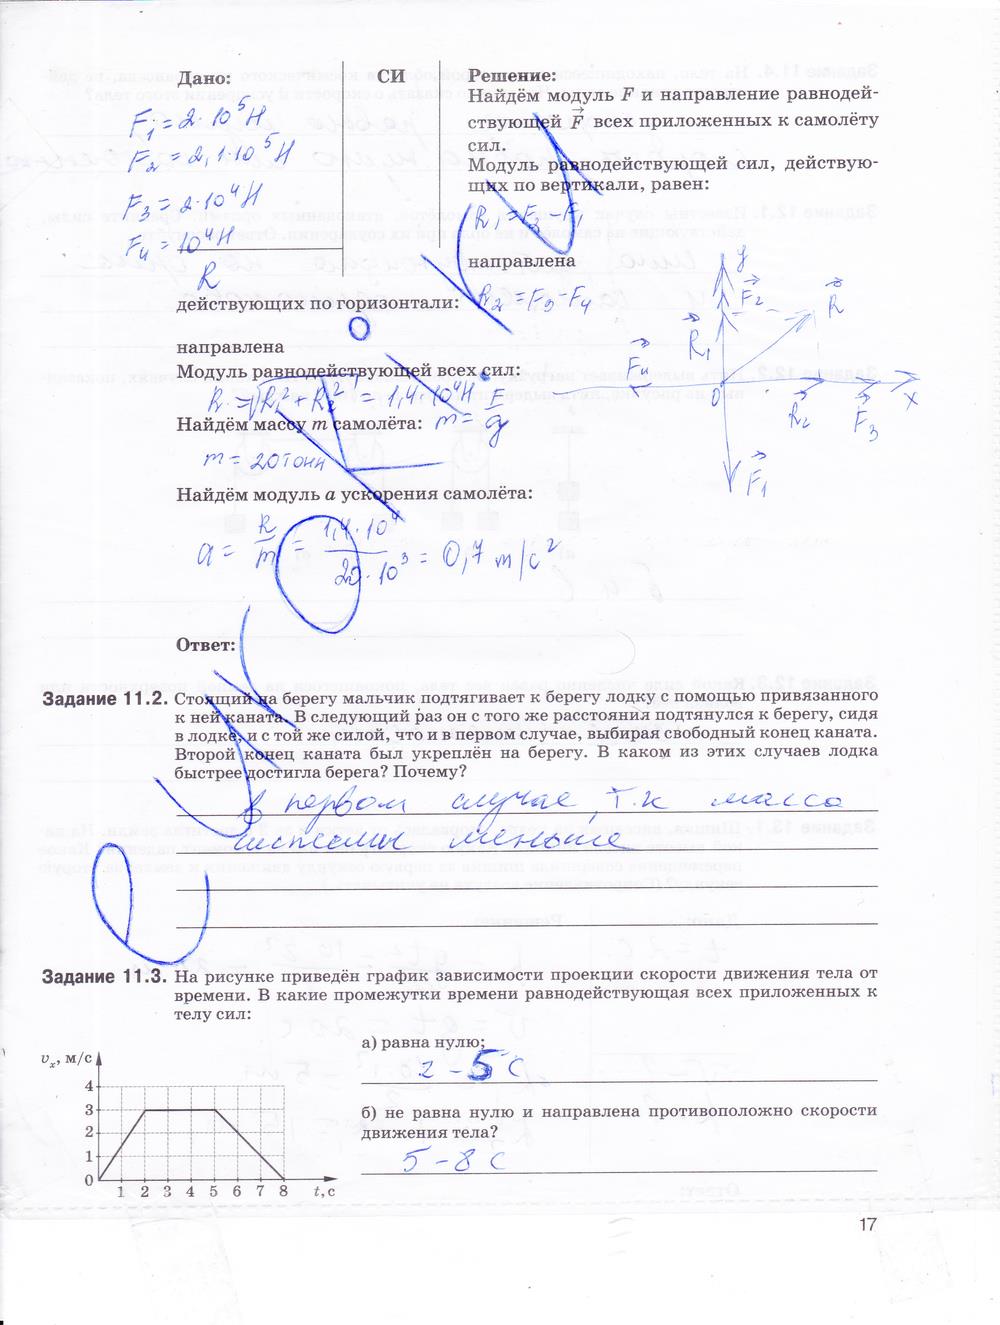 гдз 9 класс рабочая тетрадь страница 17 физика Гутник, Власова